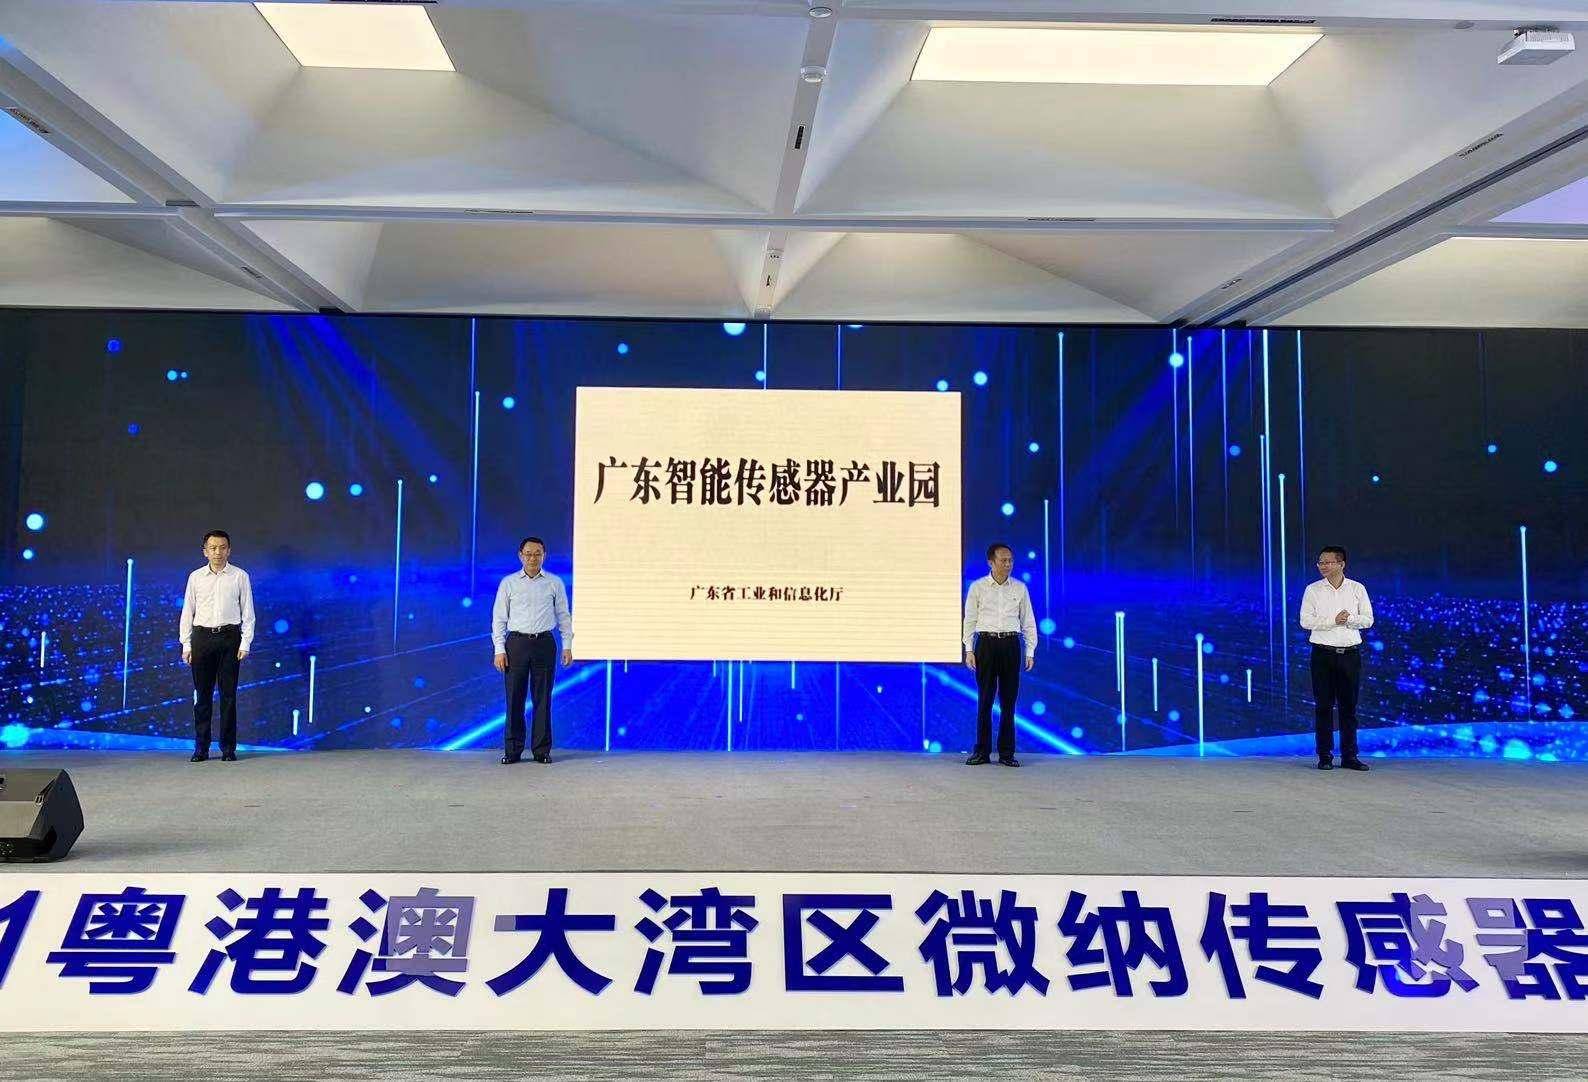 广东智能传感器产业园”和“广州市工业软件产业园”揭牌